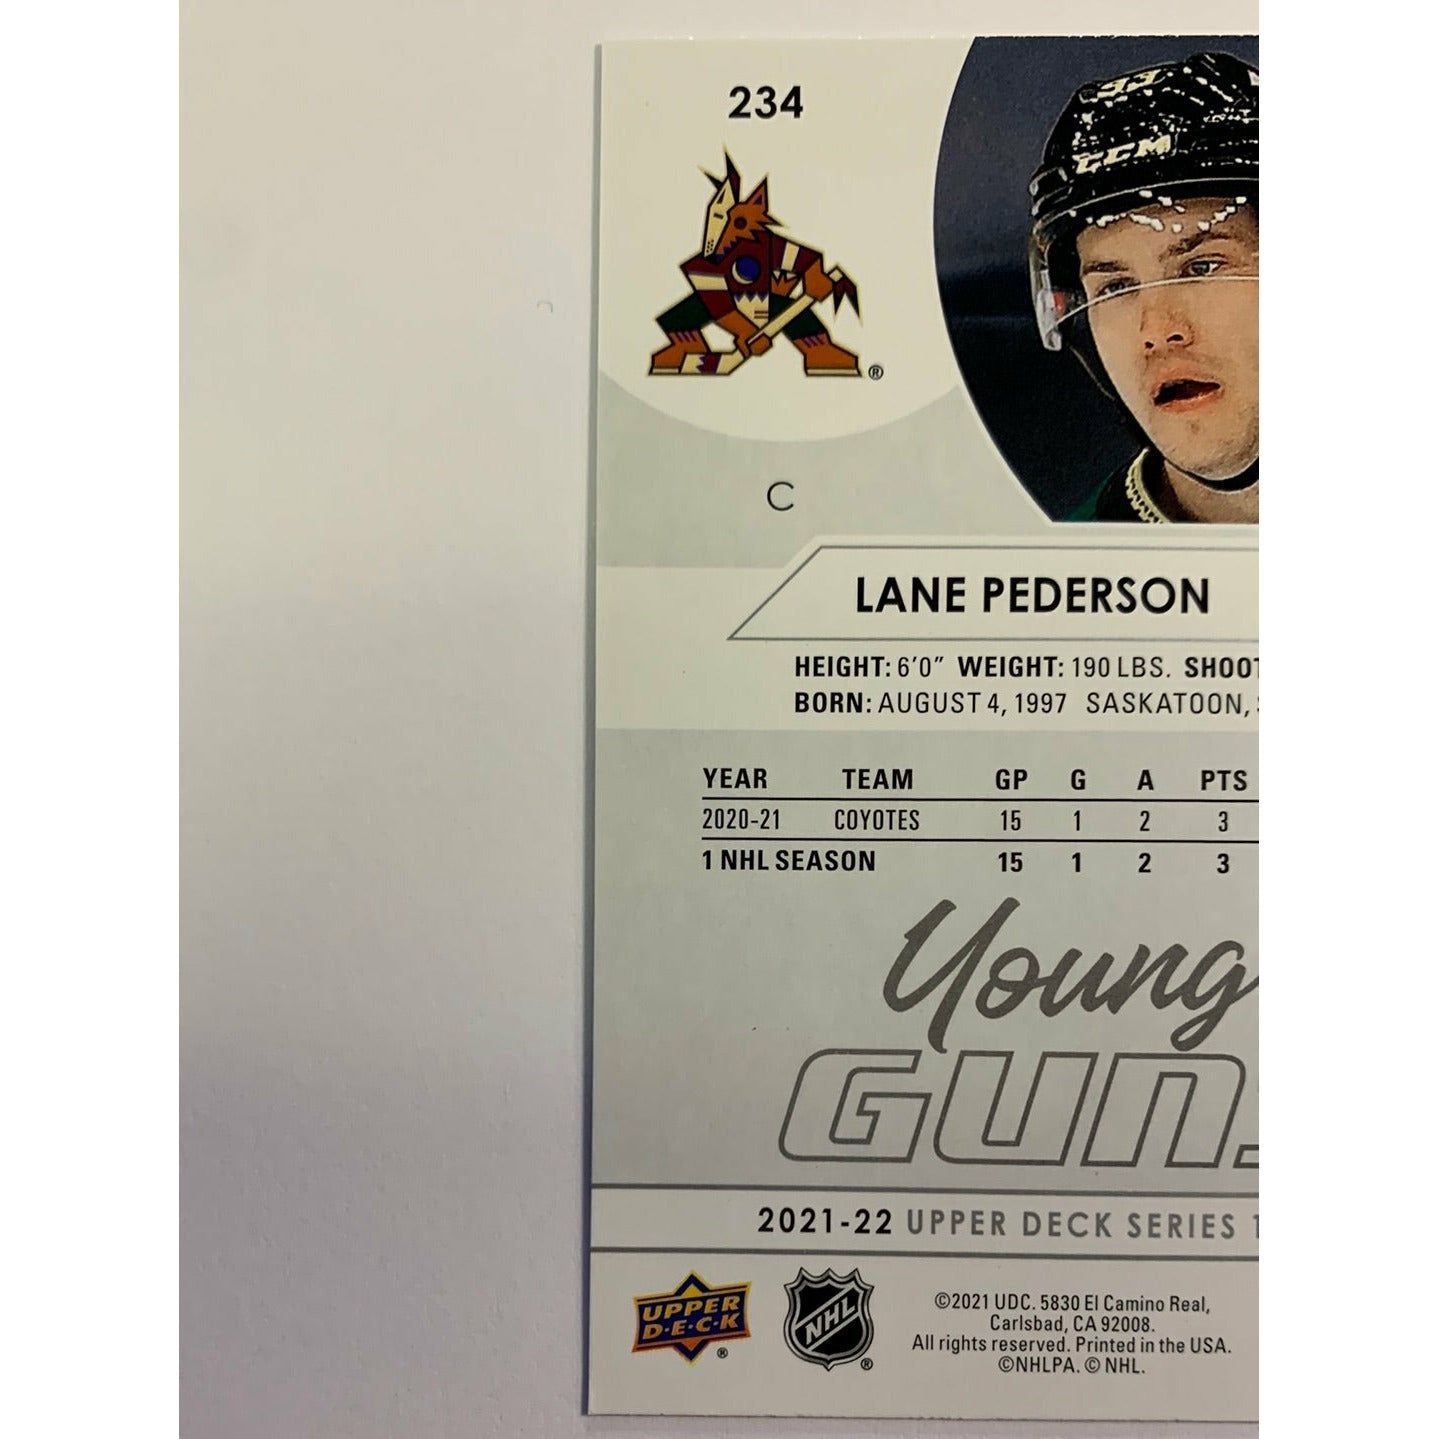 2021-22 Upper Deck Series 1 Lane Pederson Young Guns